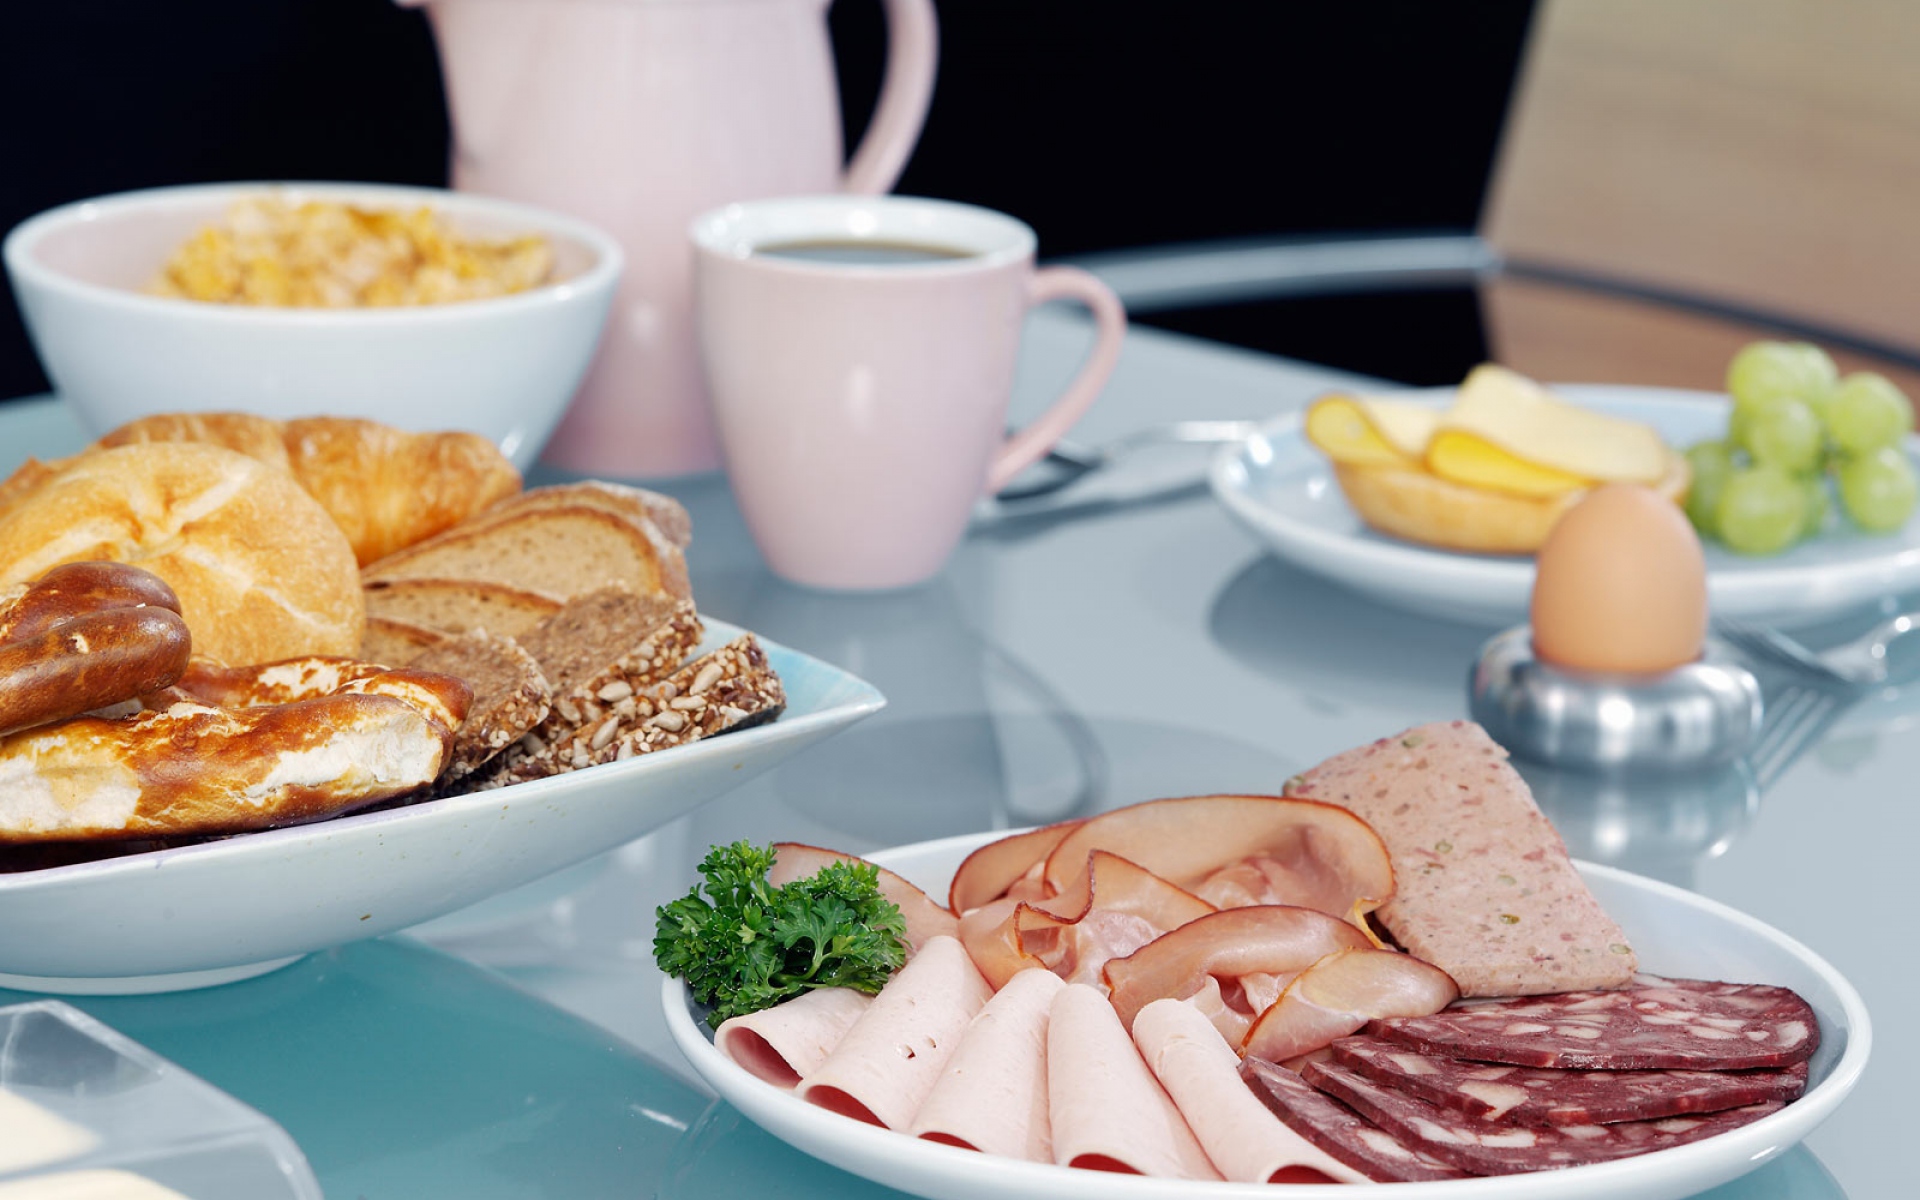 Картинки Завтрак, стол, закуска, мясо, бекон, сыр, вырезка, хлеб, яйцо, кофе фото и обои на рабочий стол